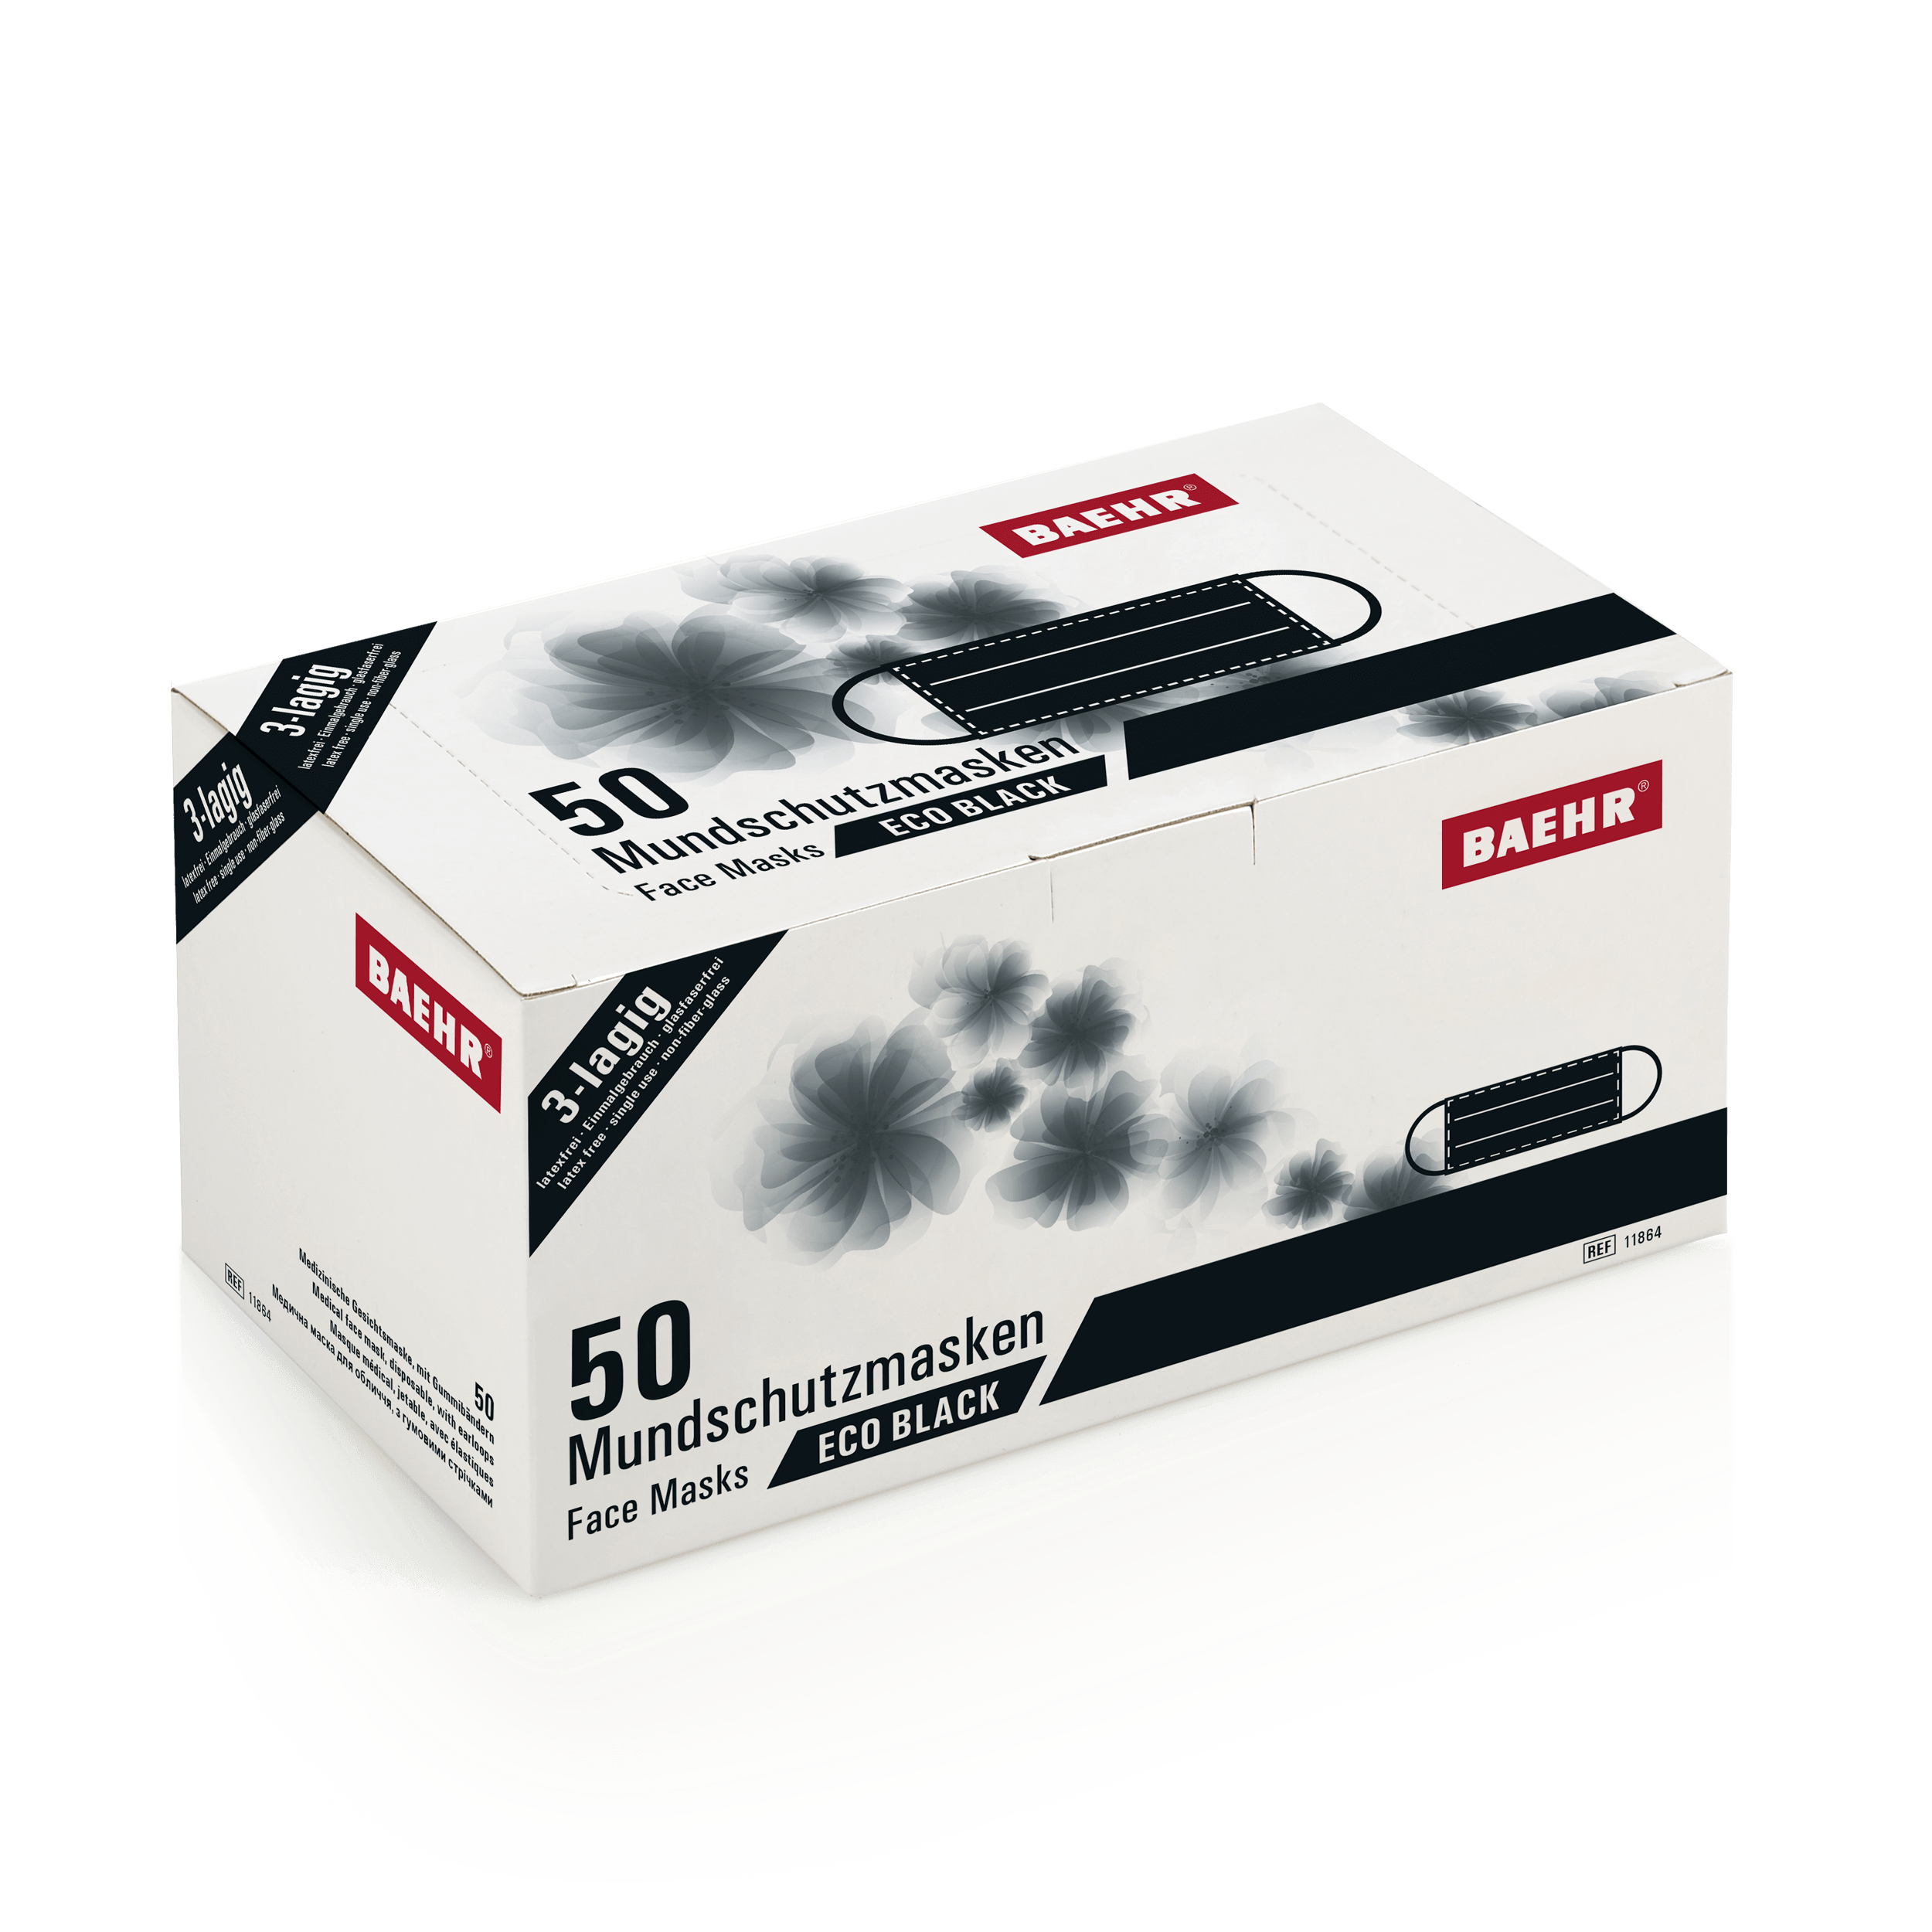 BAEHR Mundschutzmasken ECO BLACK, 1 Pack (50 Stück)